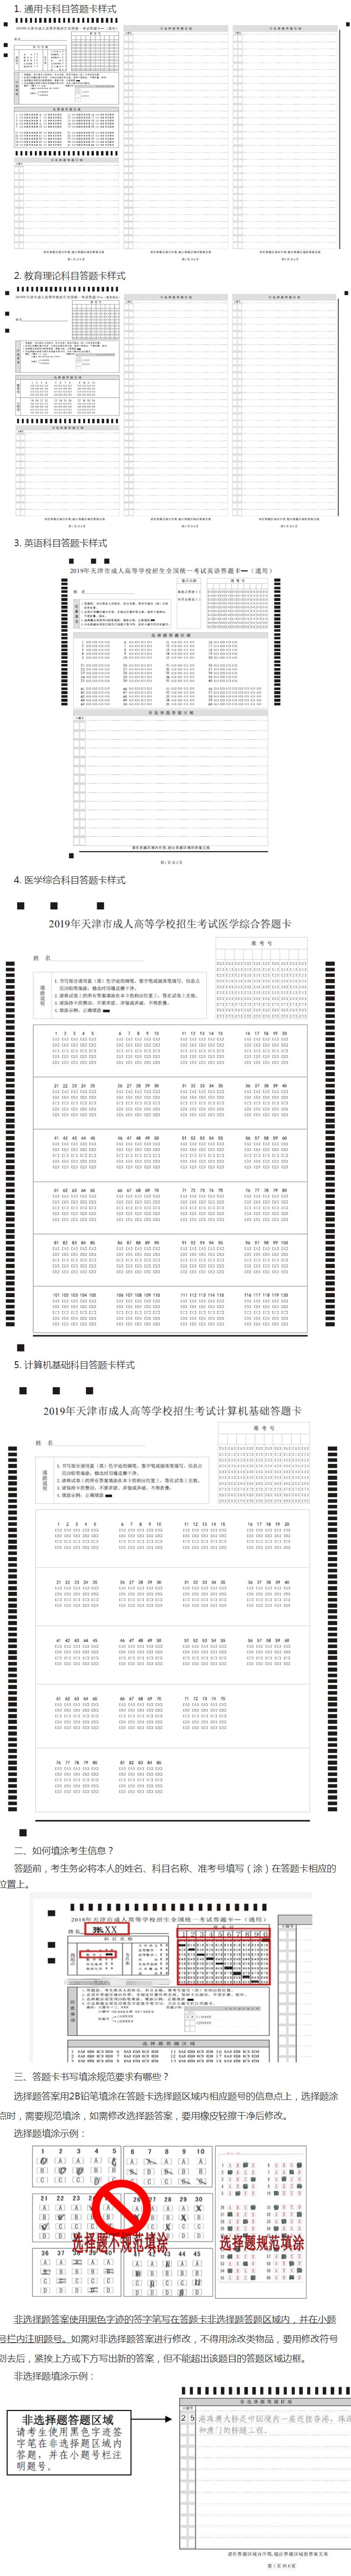 2020年天津成人高考答题卡规范化作答问答.png